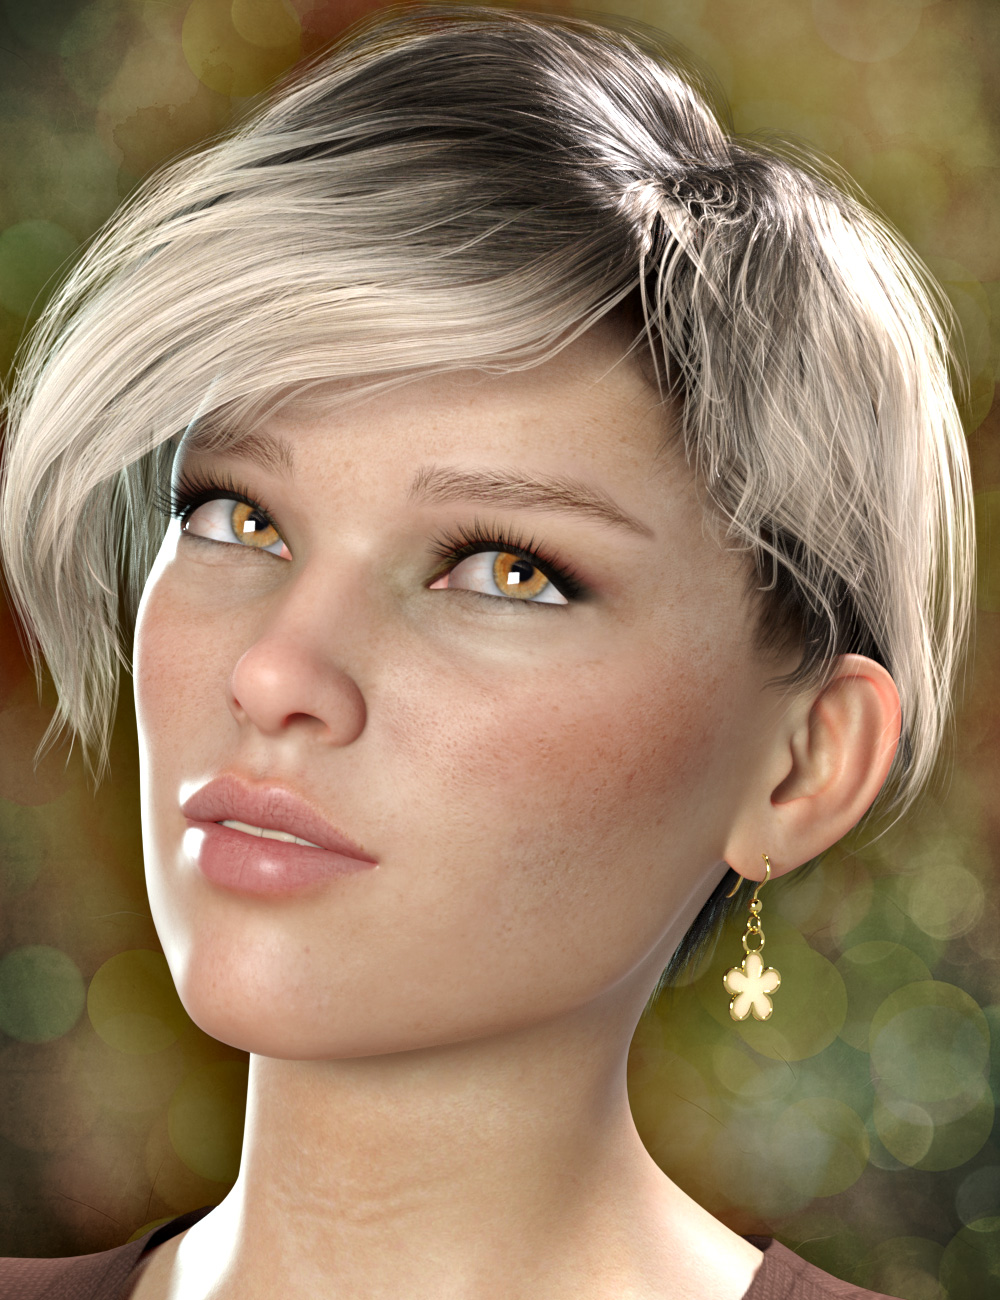 Flower Earrings for Genesis 8 Females by: esha, 3D Models by Daz 3D